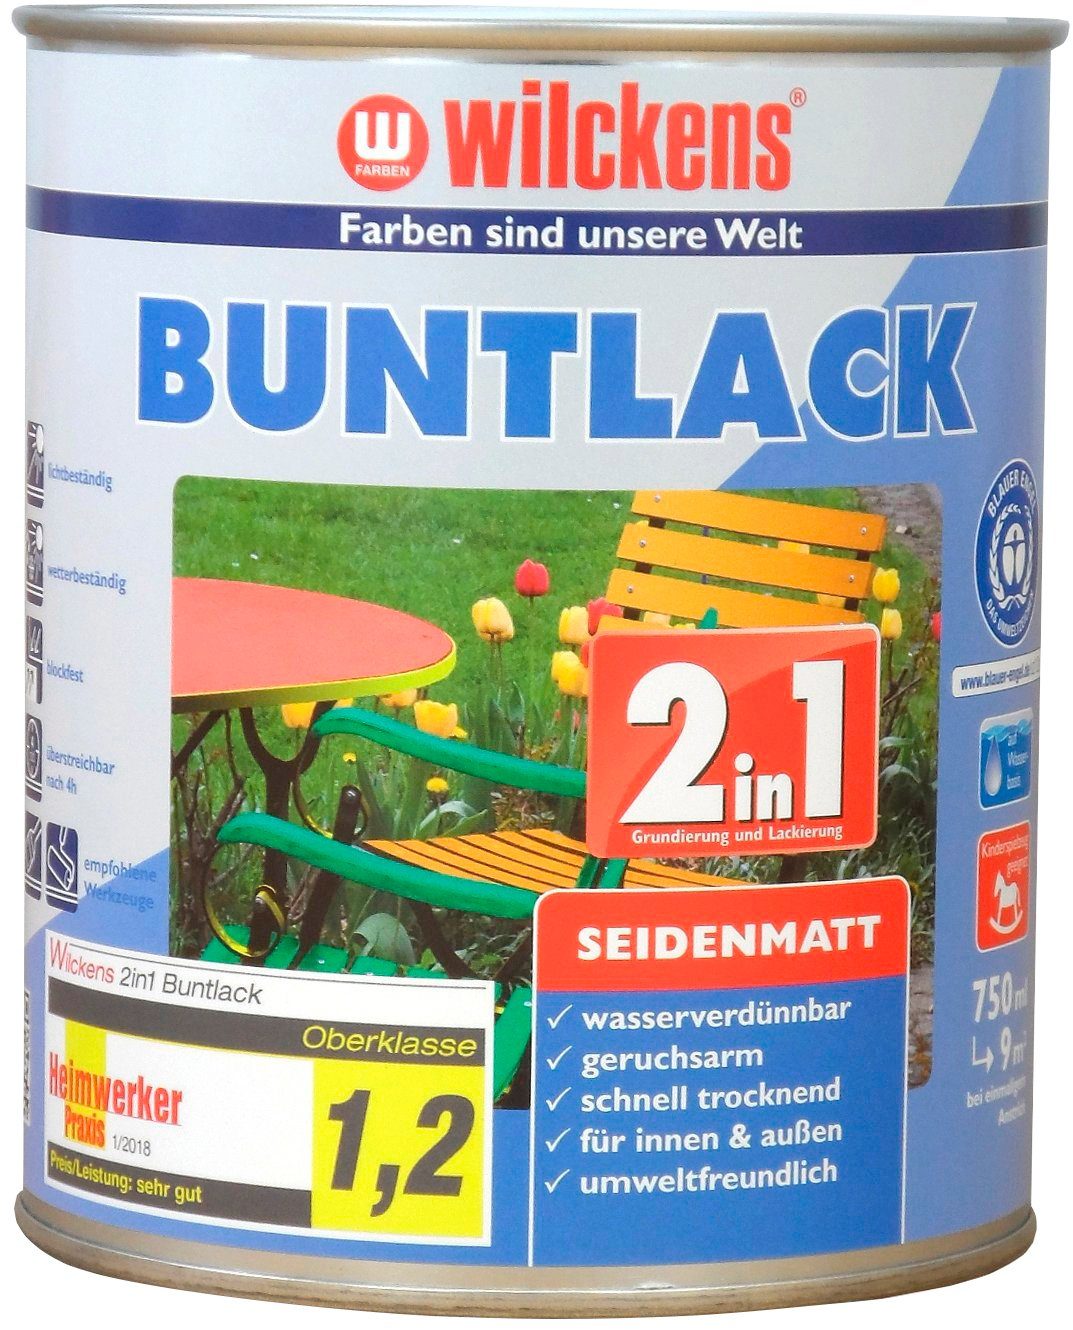 Wilckens Farben Holzlack 2in1 Buntlack seidenmatt, umweltfreundlich RAL 1015 Hellelfenbein seidenmatt